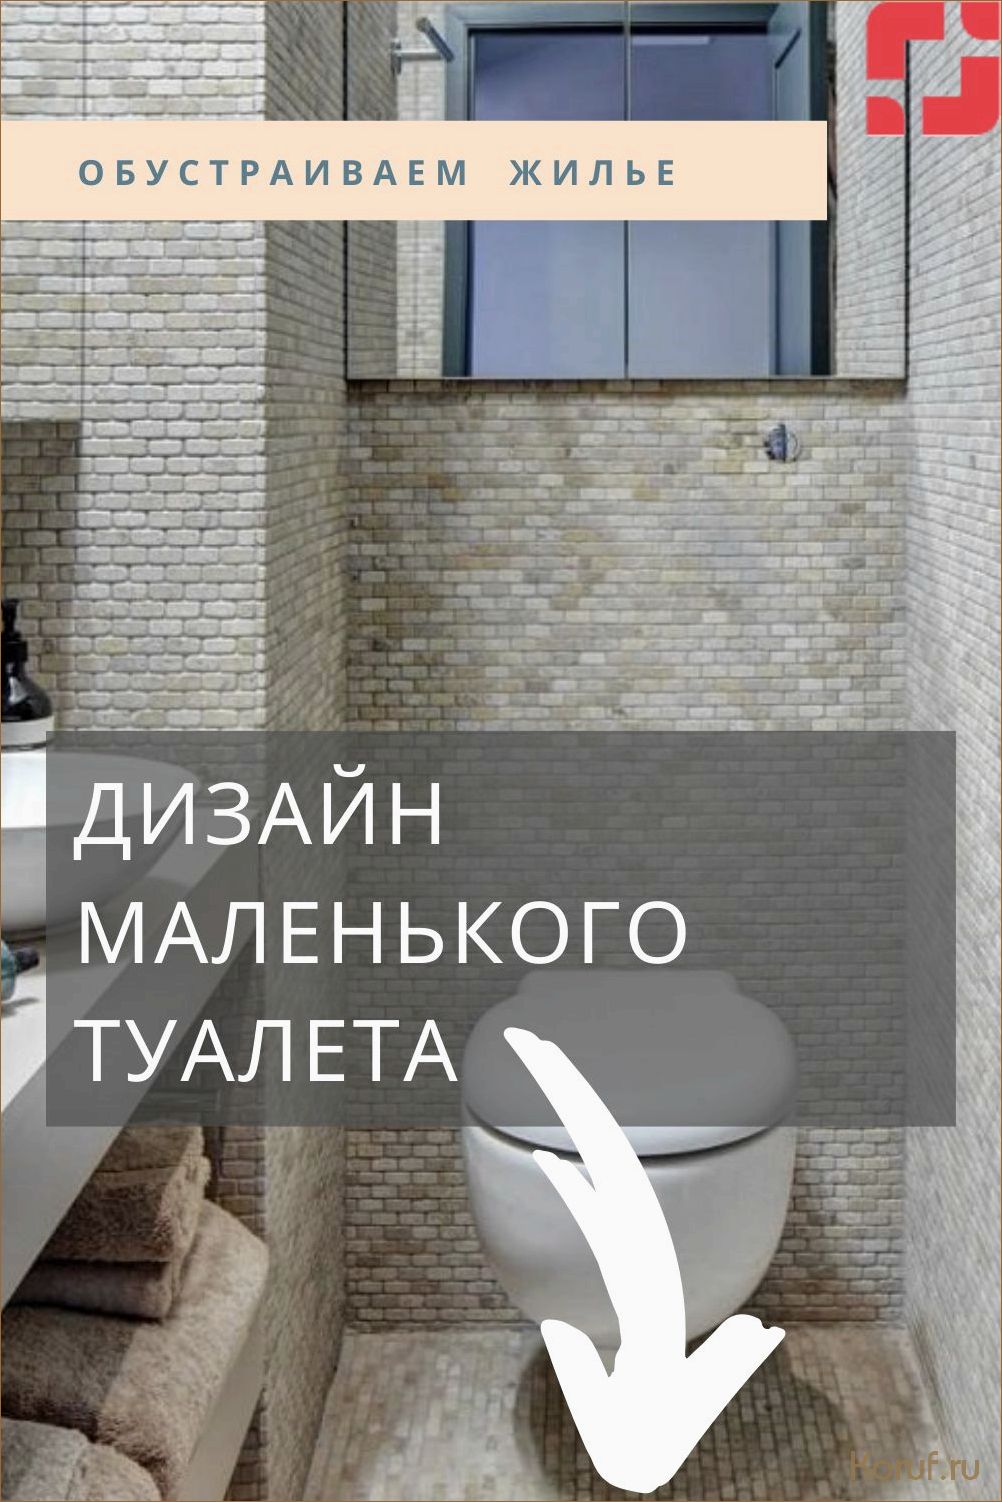 10 способов создать стильный туалет на бюджете: дизайнерские трюки для современного интерьера